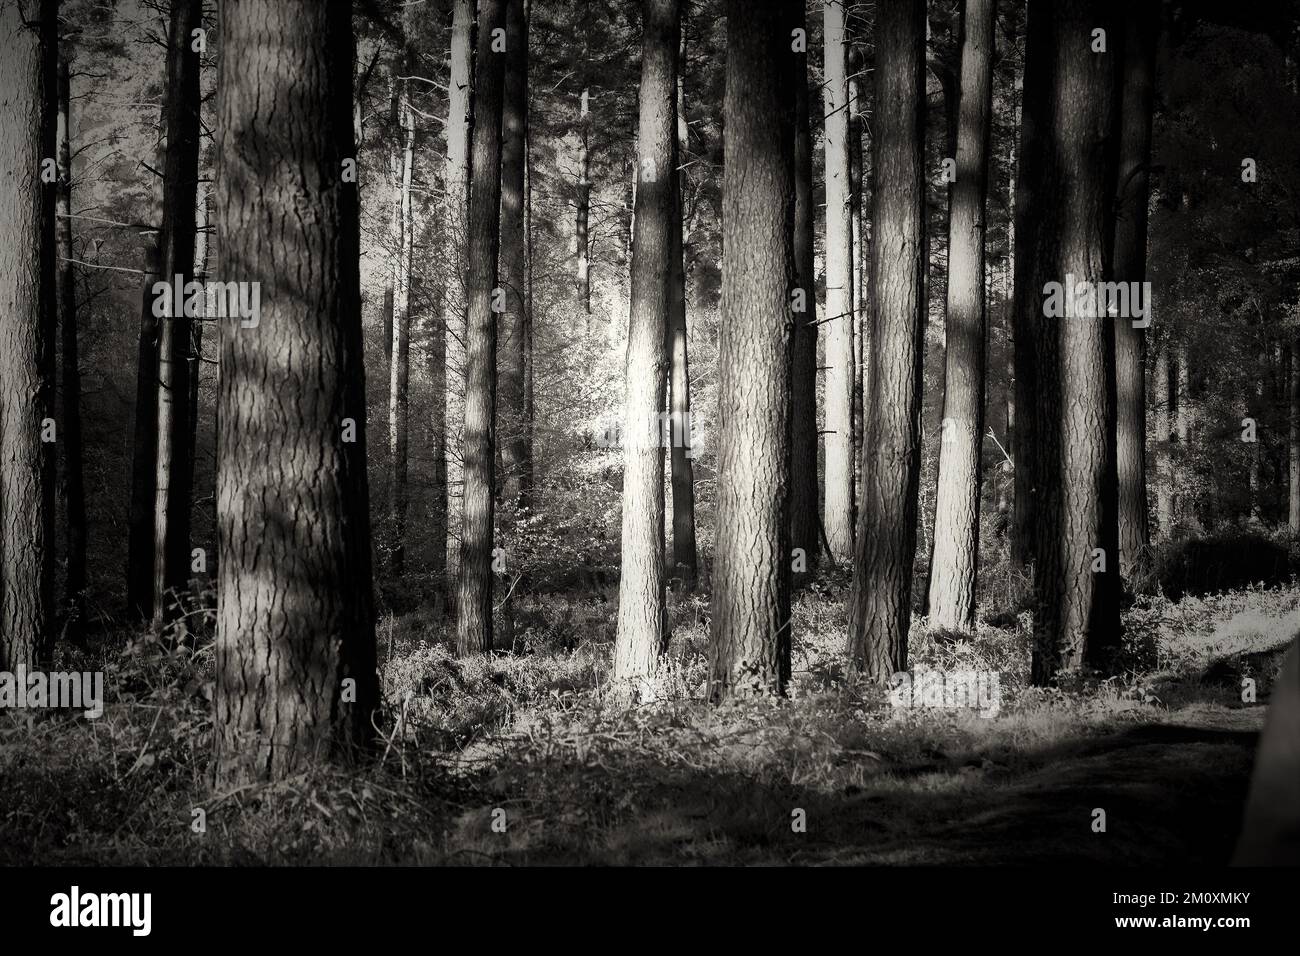 In Sepia getöntes Schwarz-Weiß-Foto des Pinienwaldes auf Cannock Chase AONB Gebiet von herausragender natürlicher Schönheit Stockfoto